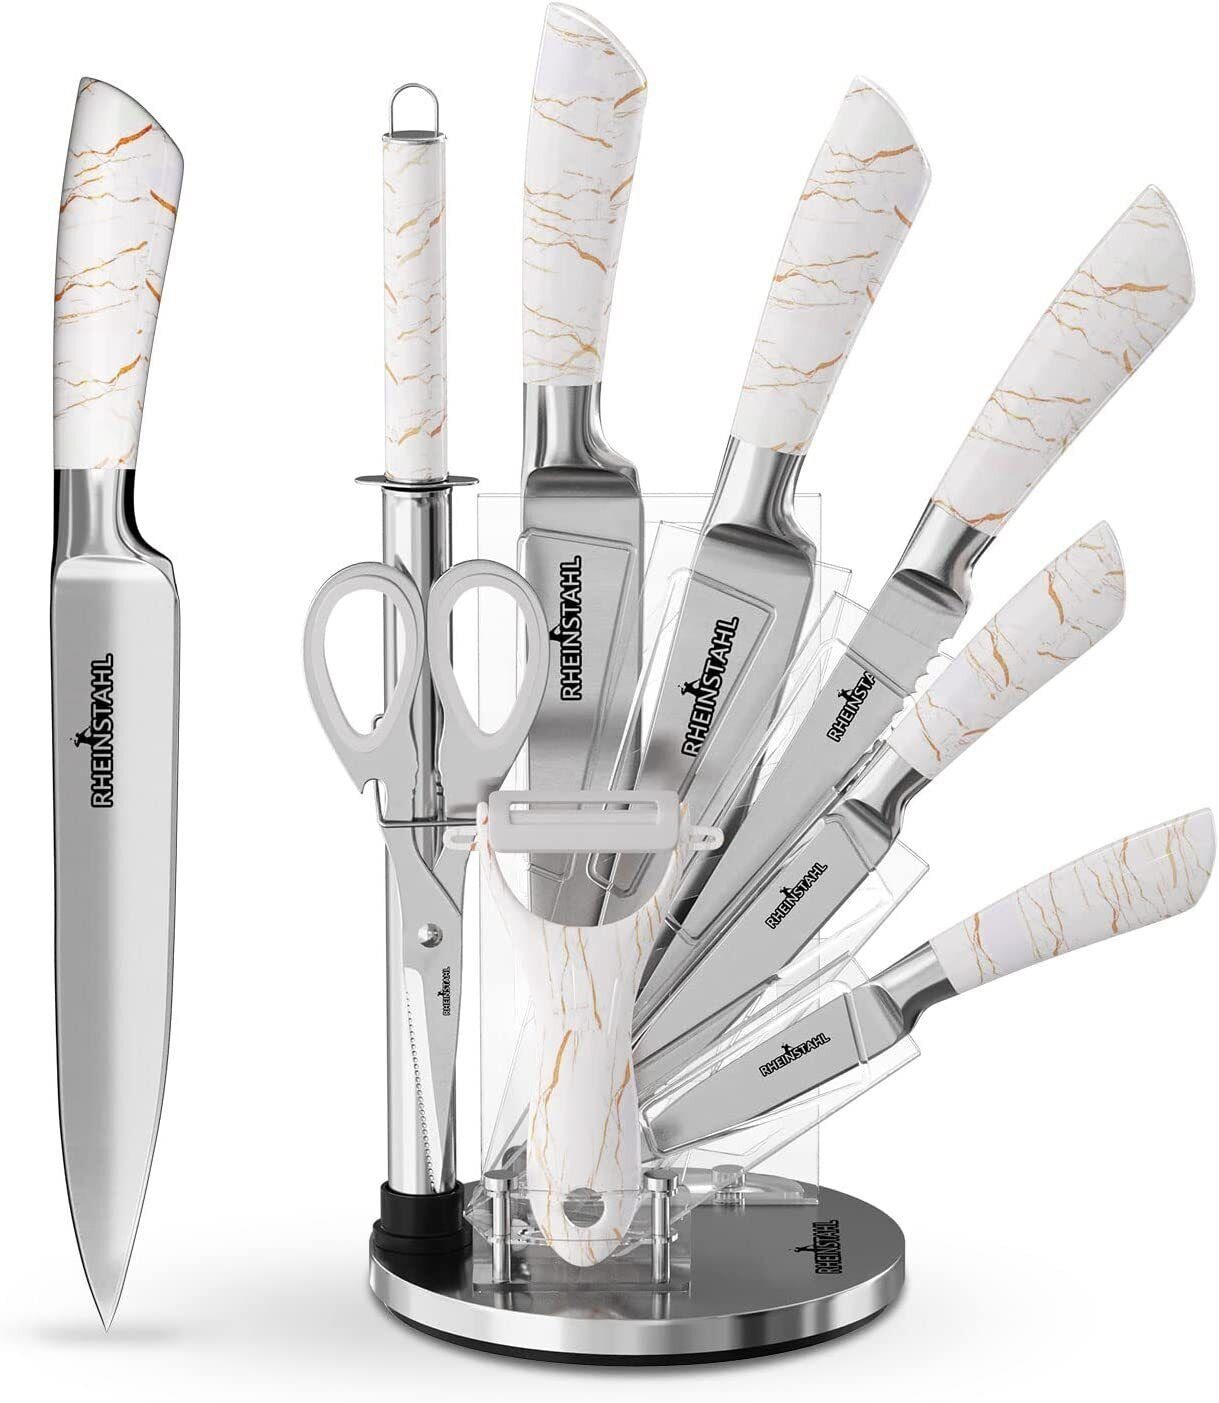 RHEINSTAHL Messer-Set 9 teilig Messerblock Messerset Küchenmesser Set Profi  Kochmesser, Edelstahl hochwertiges SelbstschärfenMesser Küchenmesser Set